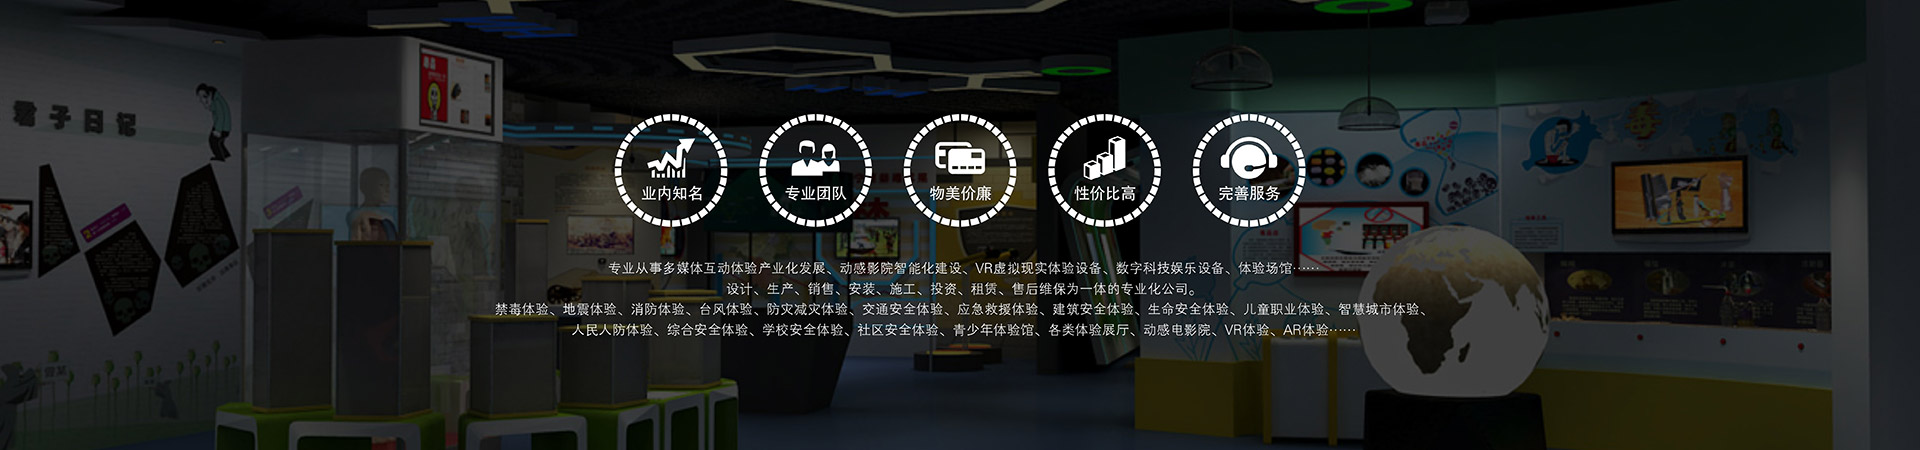 模拟安全7D互动游戏影院模拟安全扎结绳逃生训练模拟安全AR互动模拟安全动感模拟赛车模拟安全小型5D影院